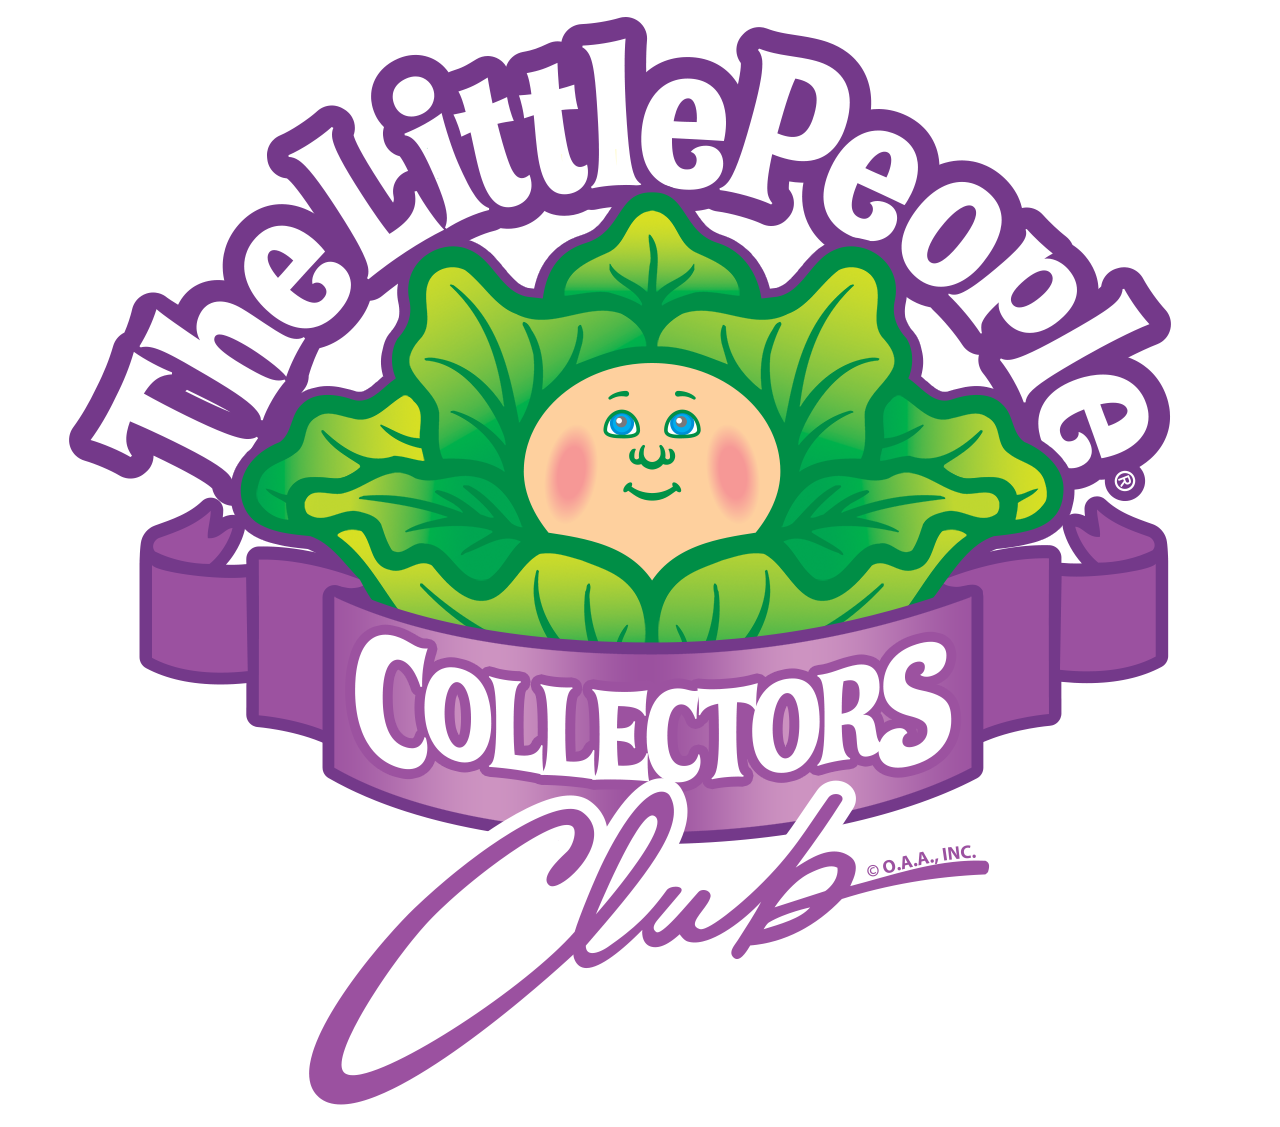 Collector's Club Membership Renewal